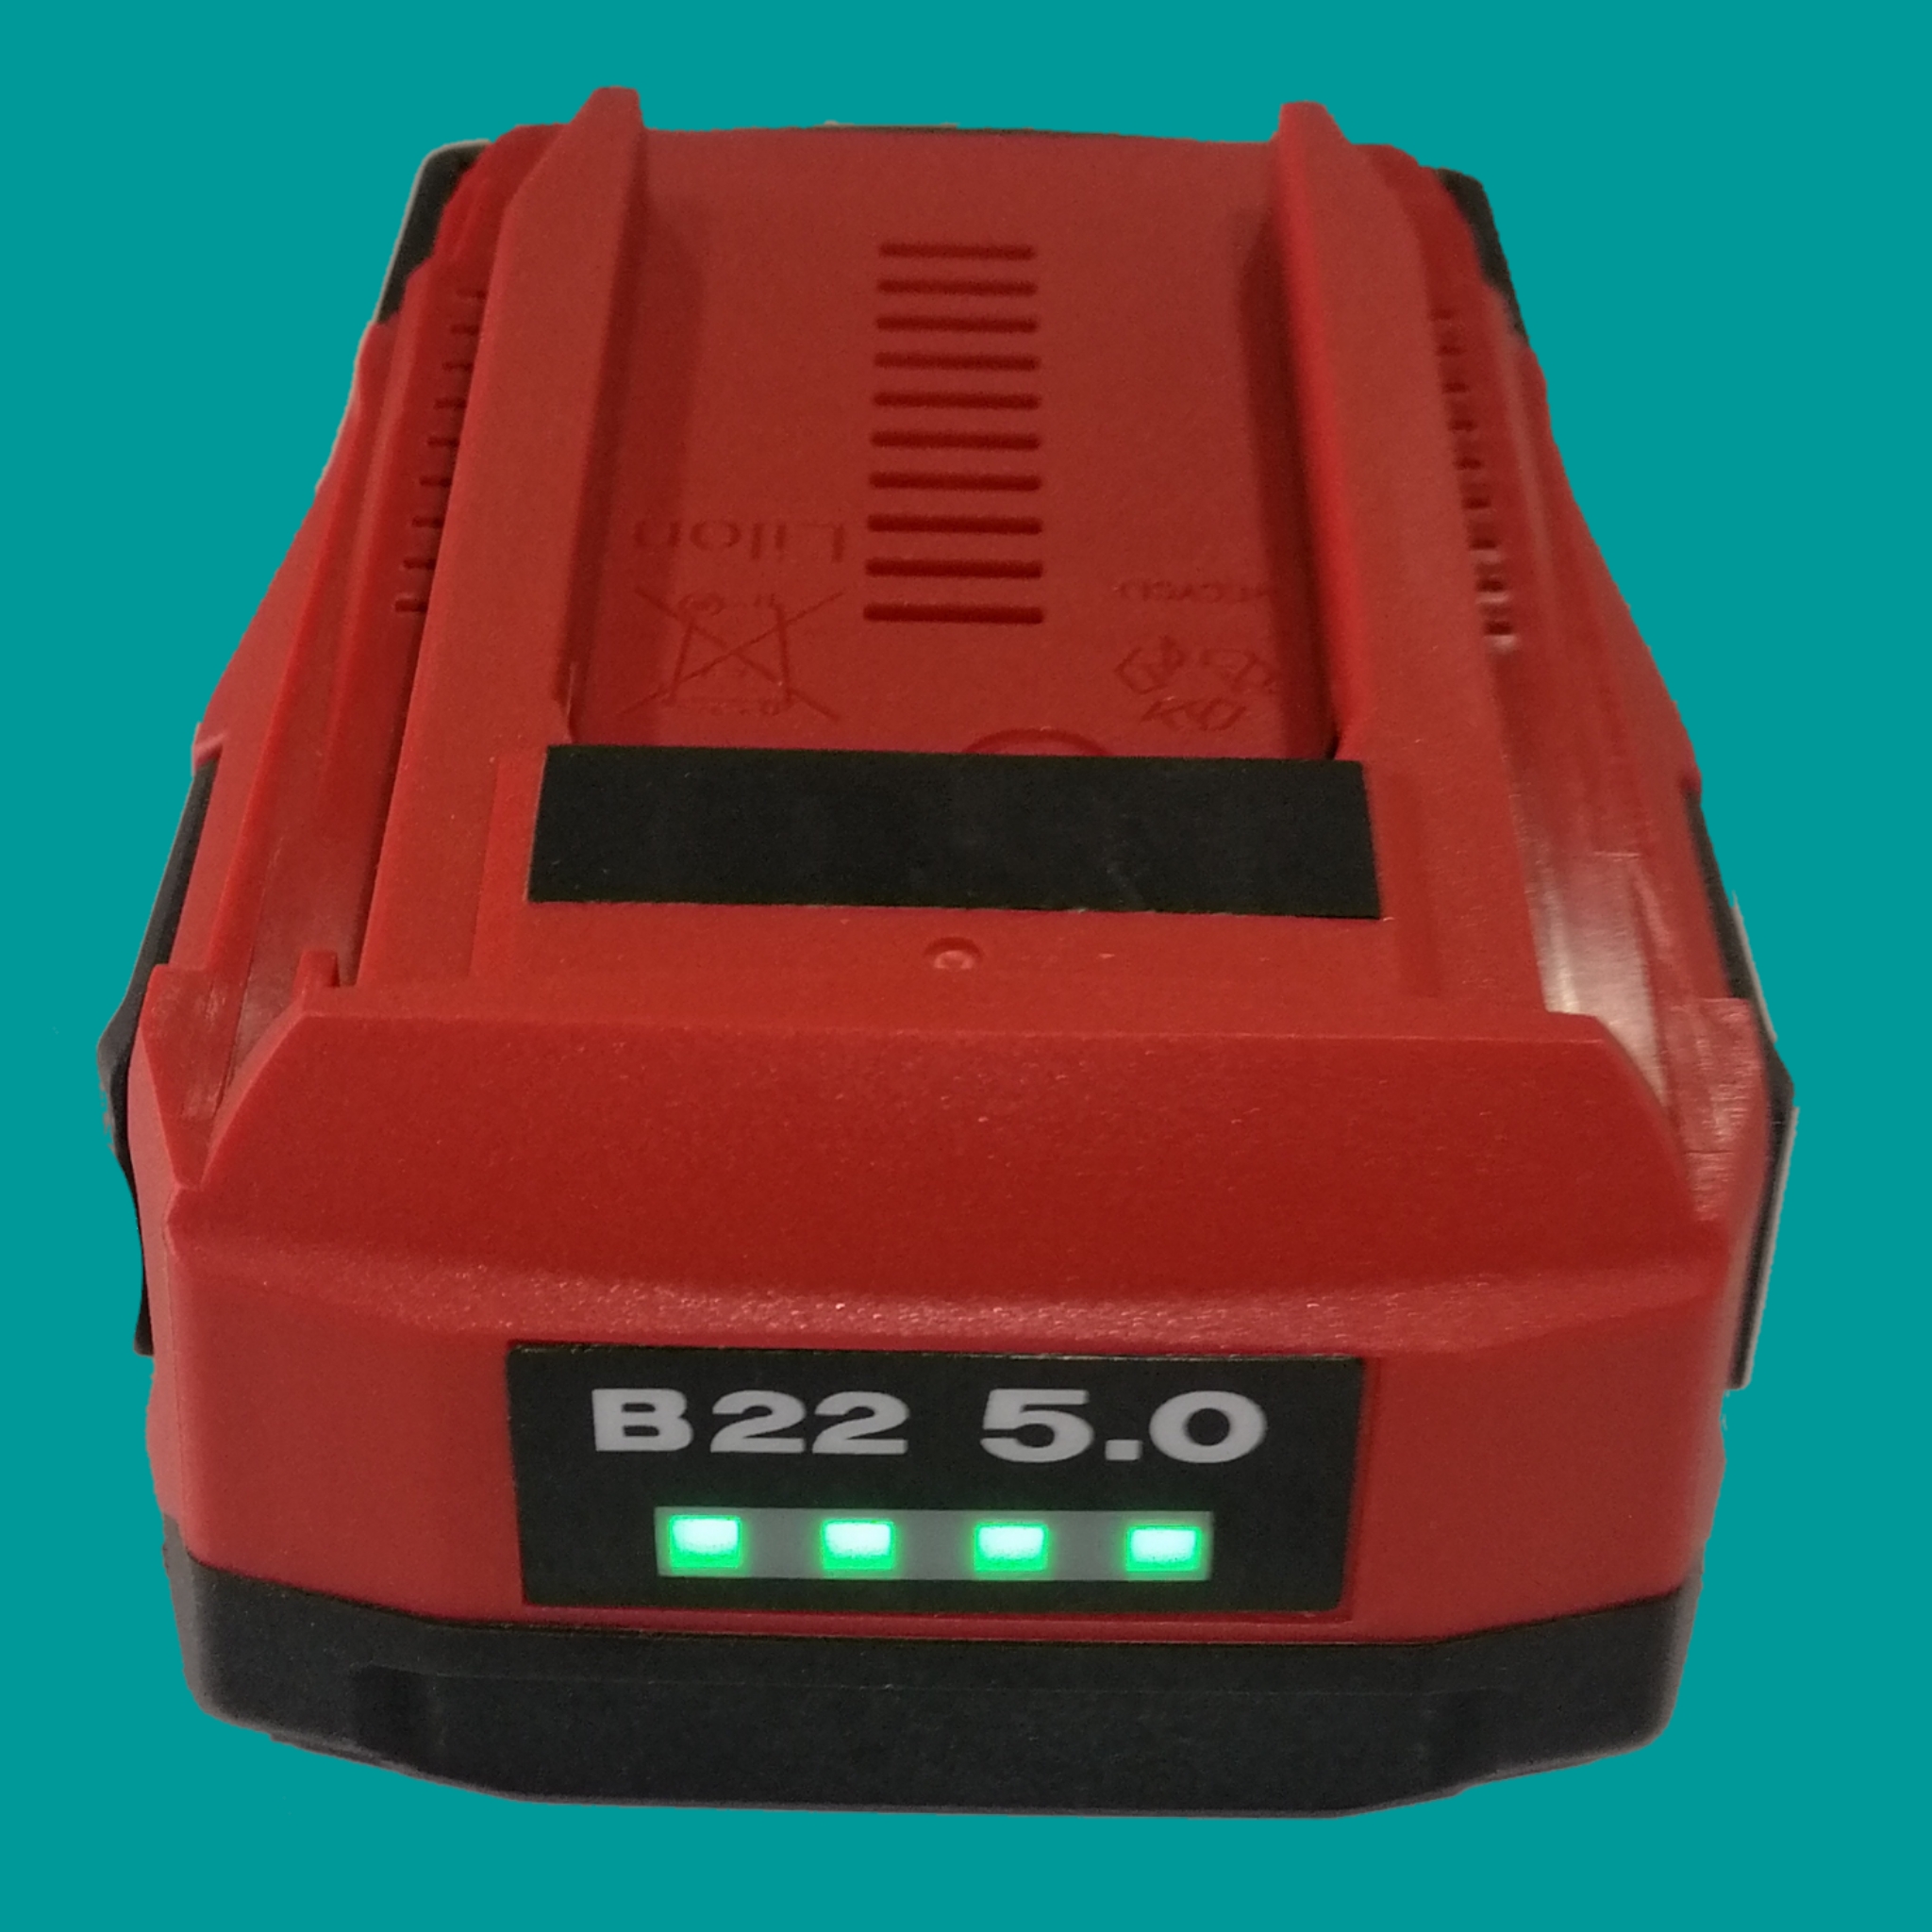 hilti b22 5.0 amper komson batarya